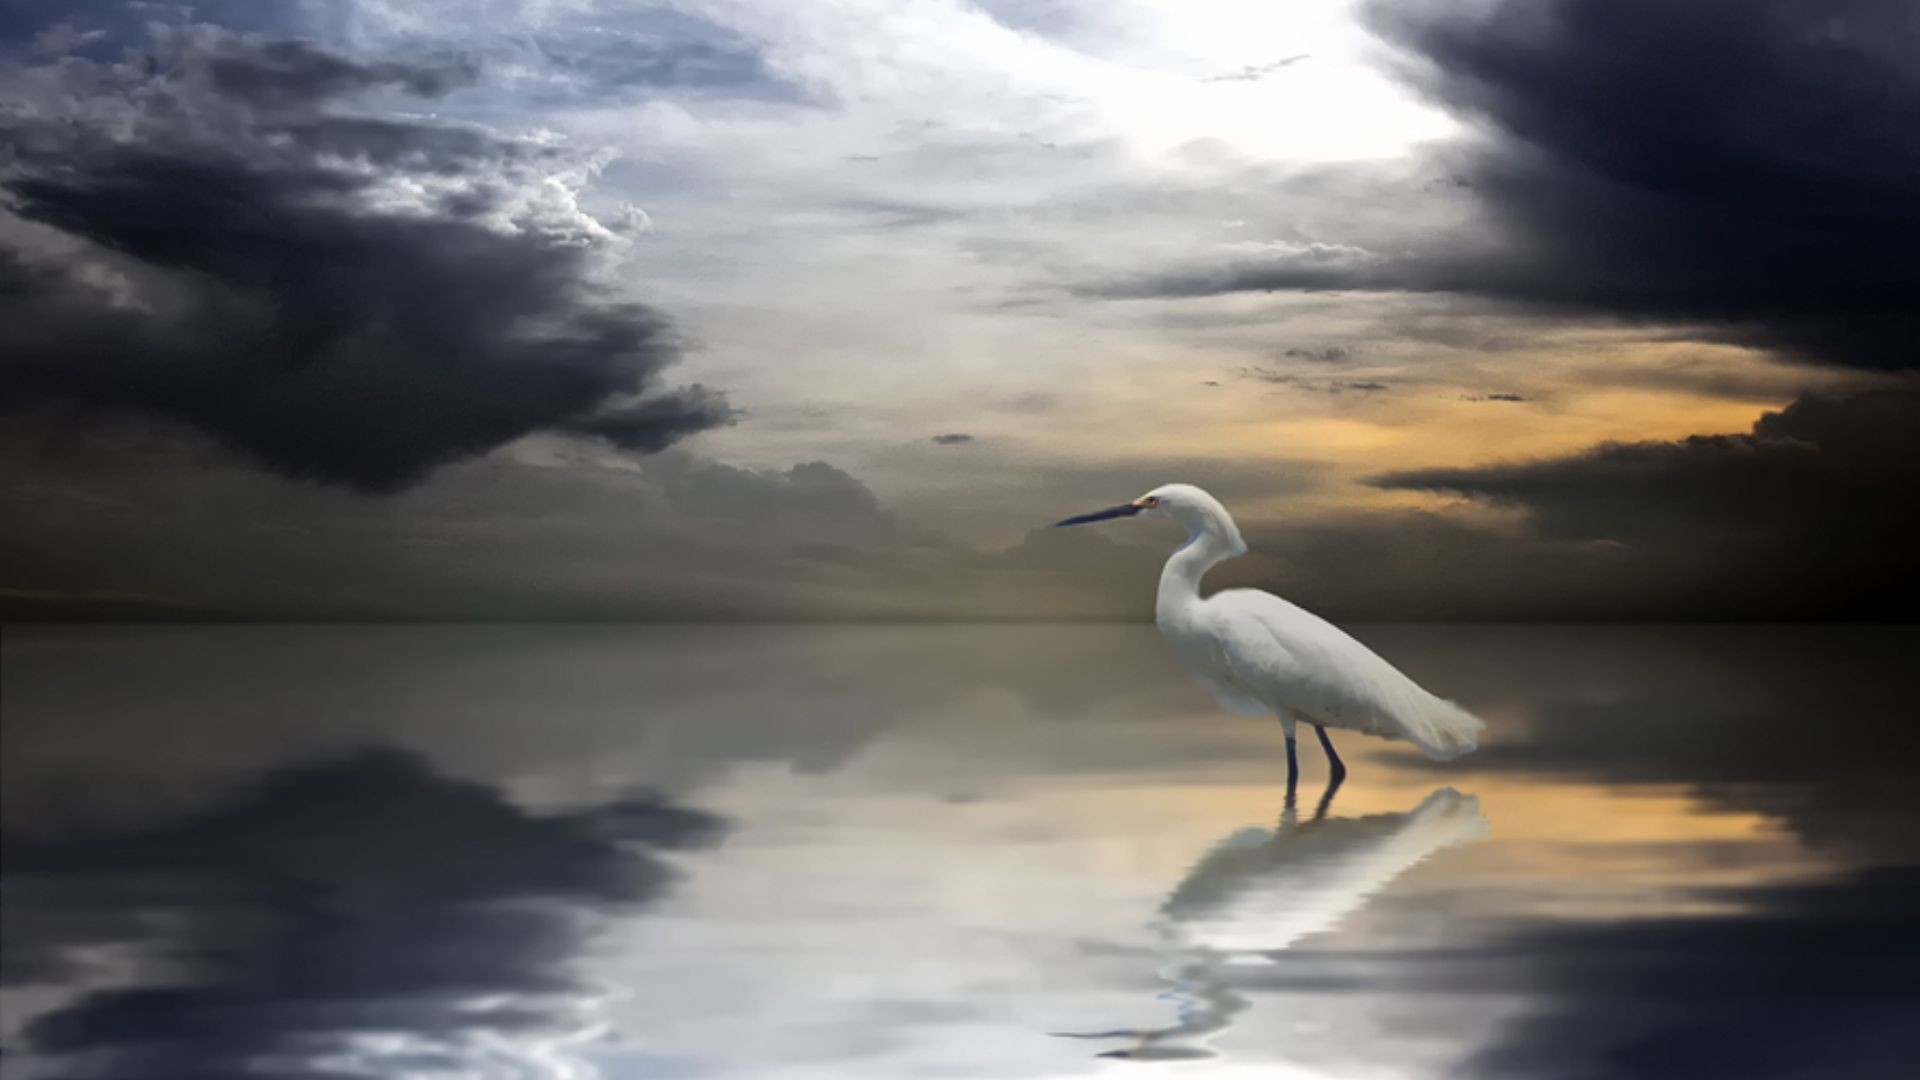 clouds, seagulls - desktop wallpaper